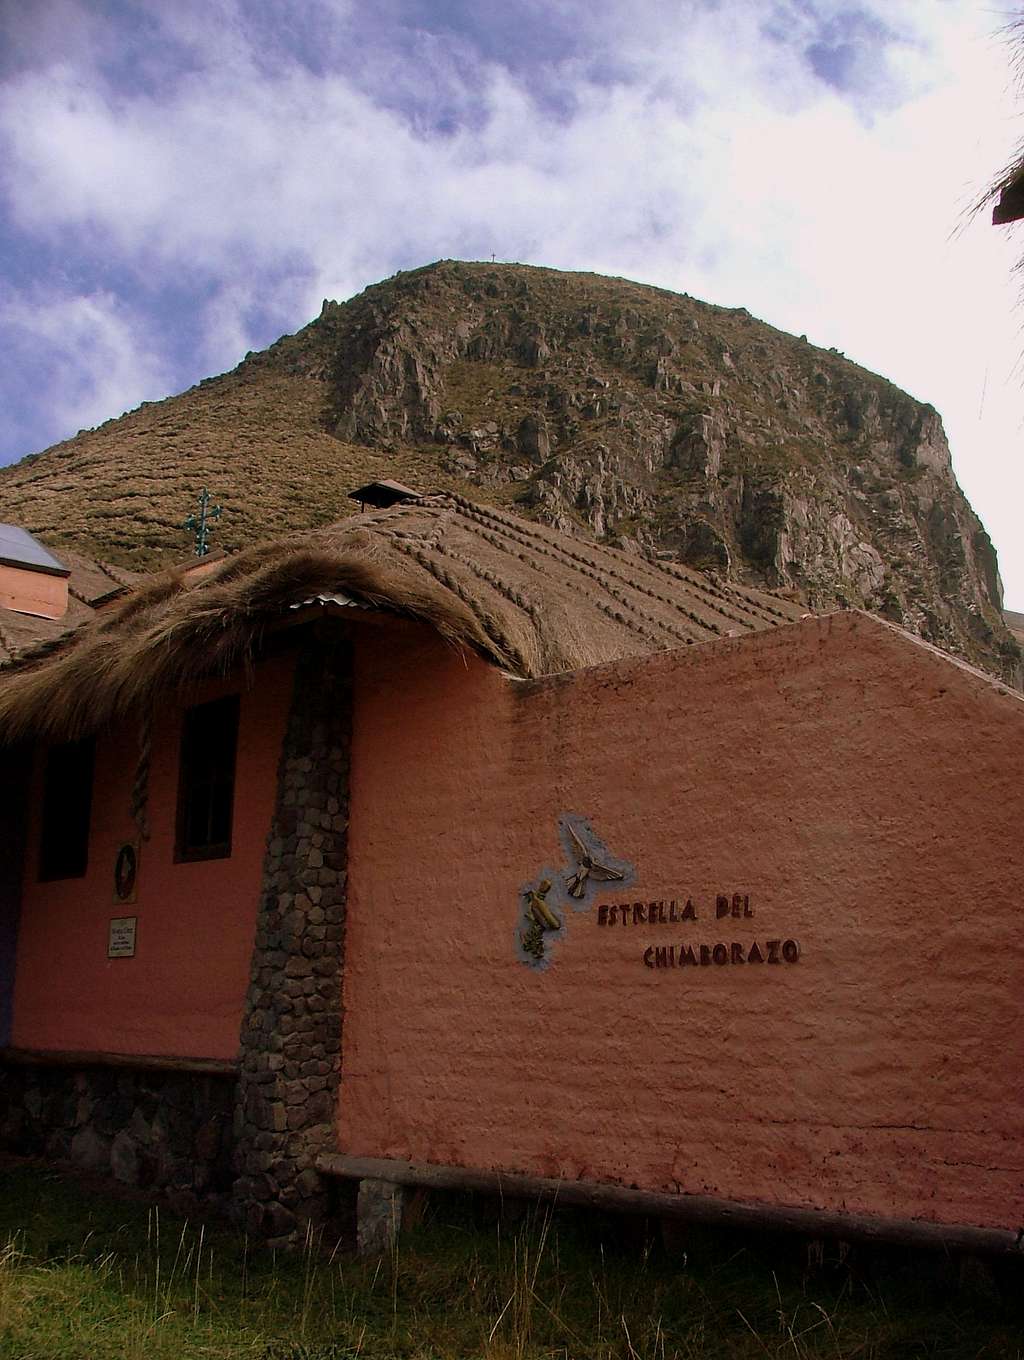 Cerro Chalata and Chimborazo Base Camp refuge.